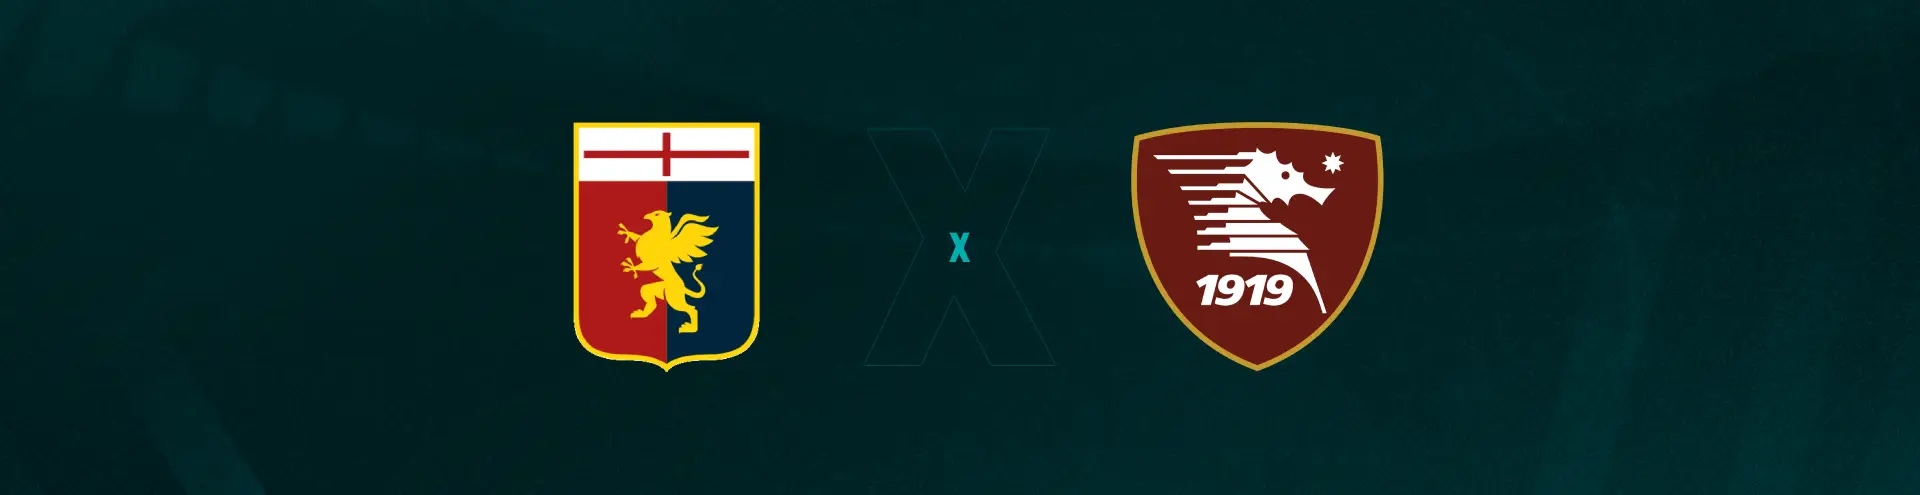 Genoa x Salernitana: confira onde assistir e mais informações sobre